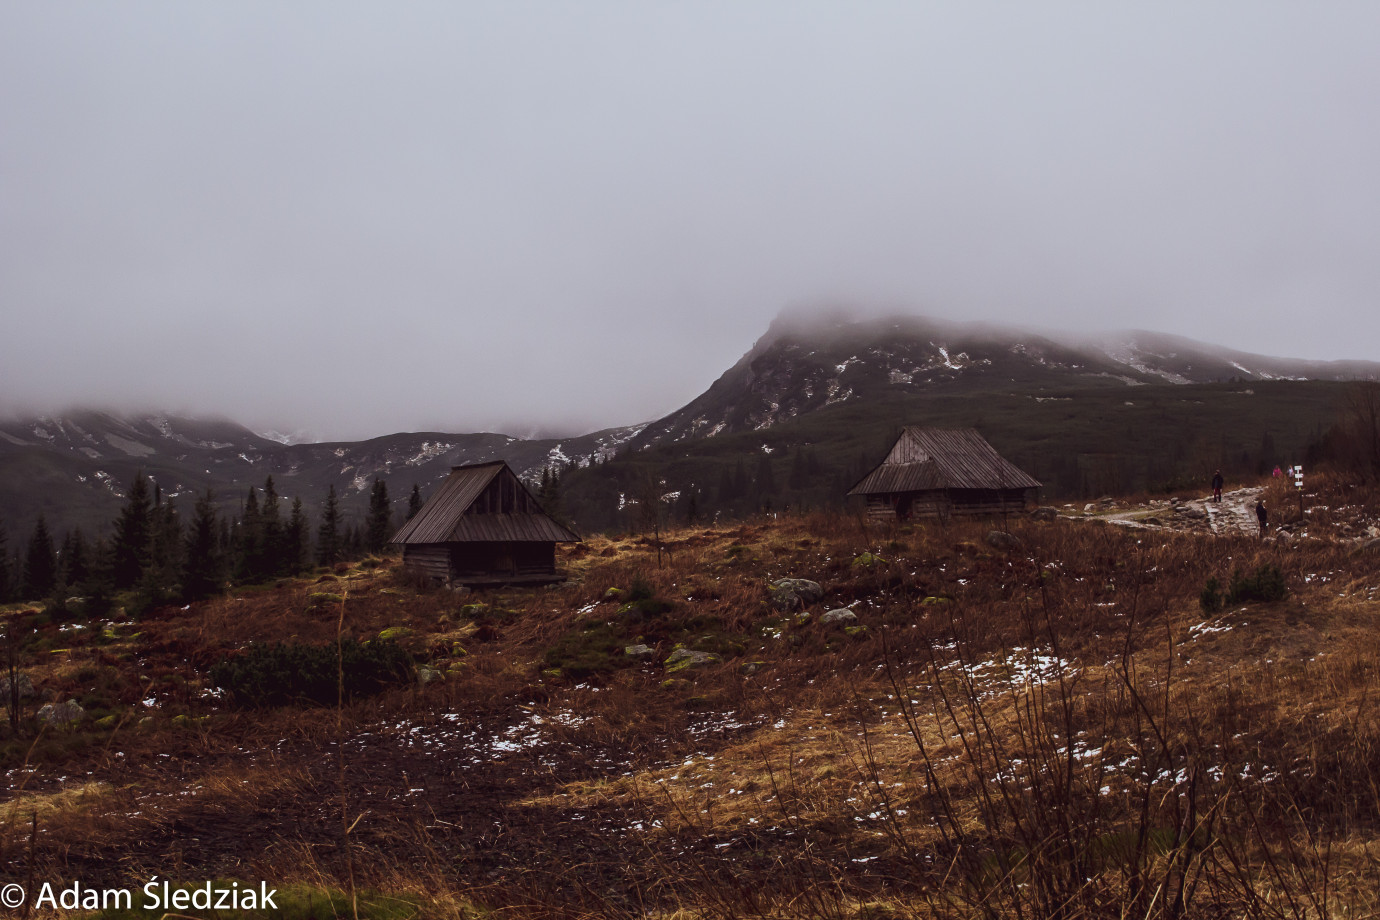 zdjęcia pruszkow fotograf adam-sledziak portfolio zdjecia krajobrazu gory mazury